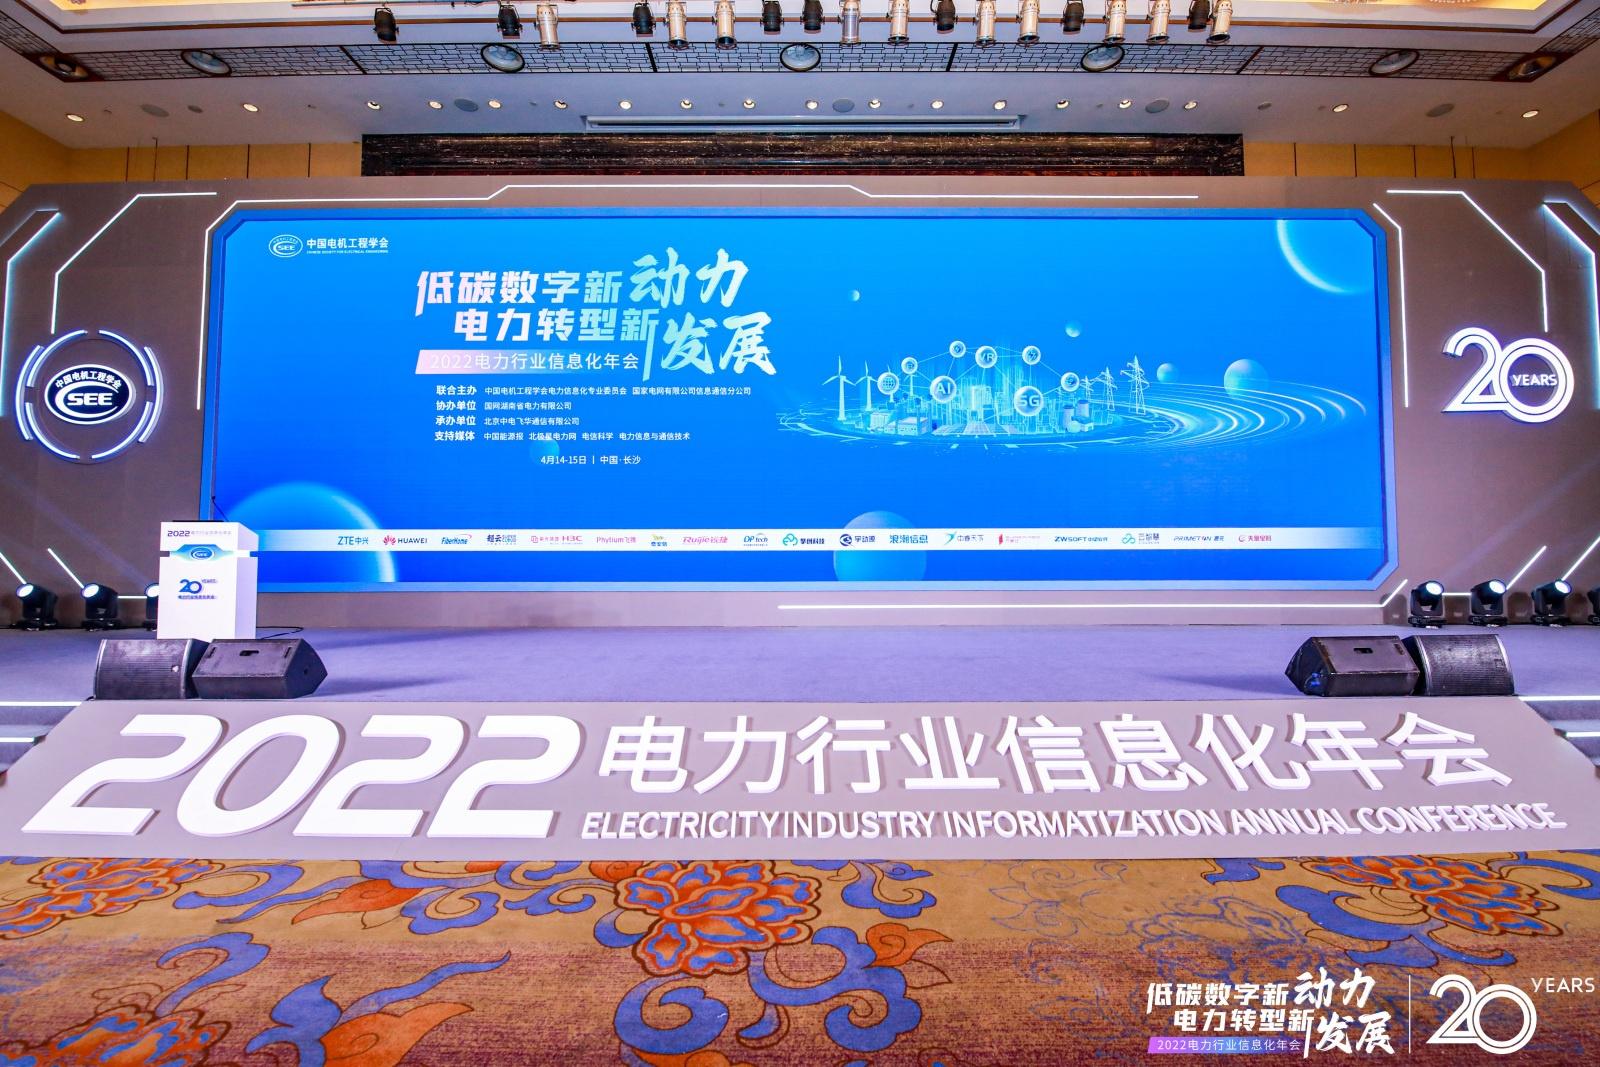 2022电力行业信息化年会| 飞腾携手亿道信息推进电力行业国产替换进程